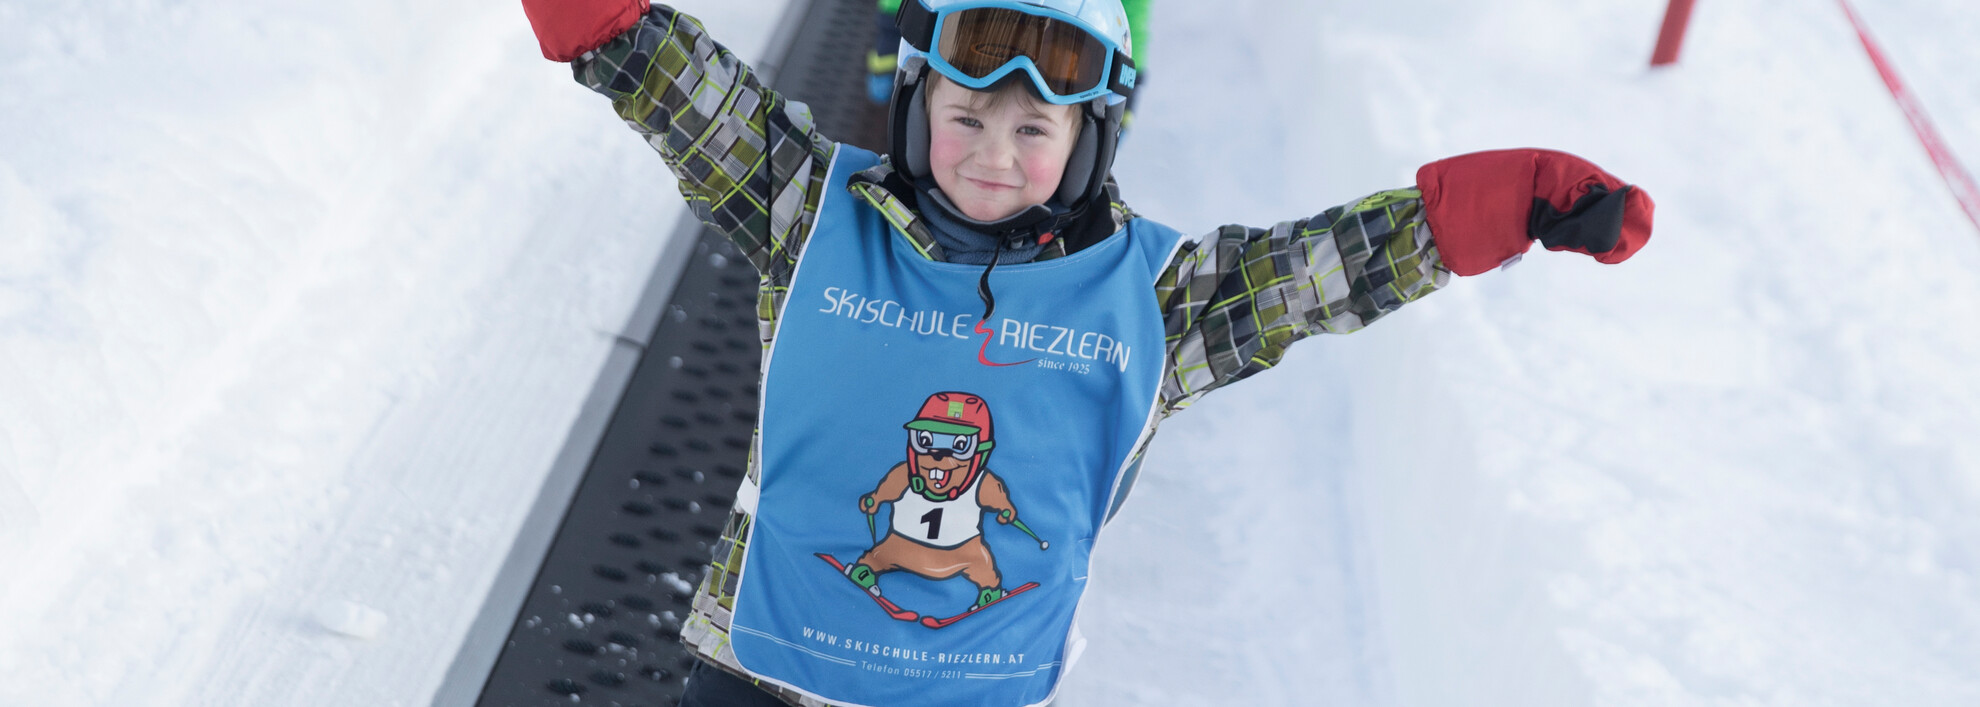  Children's ski course with Burmi | © Kleinwalsertal Tourismus eGen | Photographer: Oliver Farys